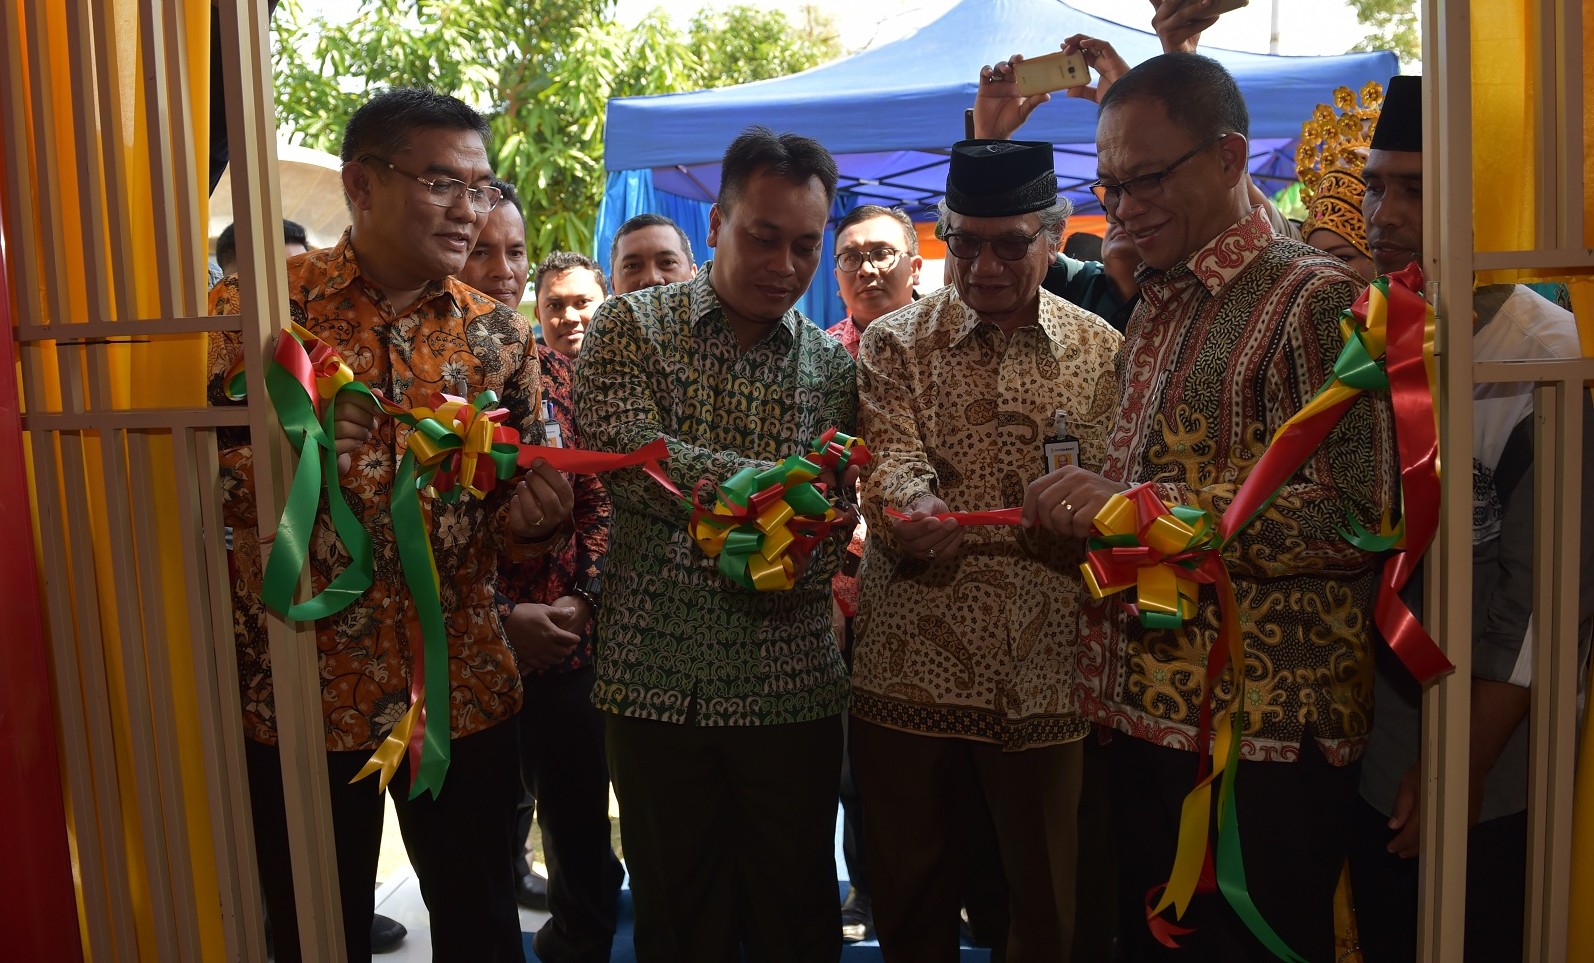 Wakil Bupati Lingga M. Nizar, S.Sos melaksanakan pengguntingan pita tanda diresmikannya Kantor Kas di Kecamatan Senayang Kabupaten Lingga Propinsi Kepulauan Riau.